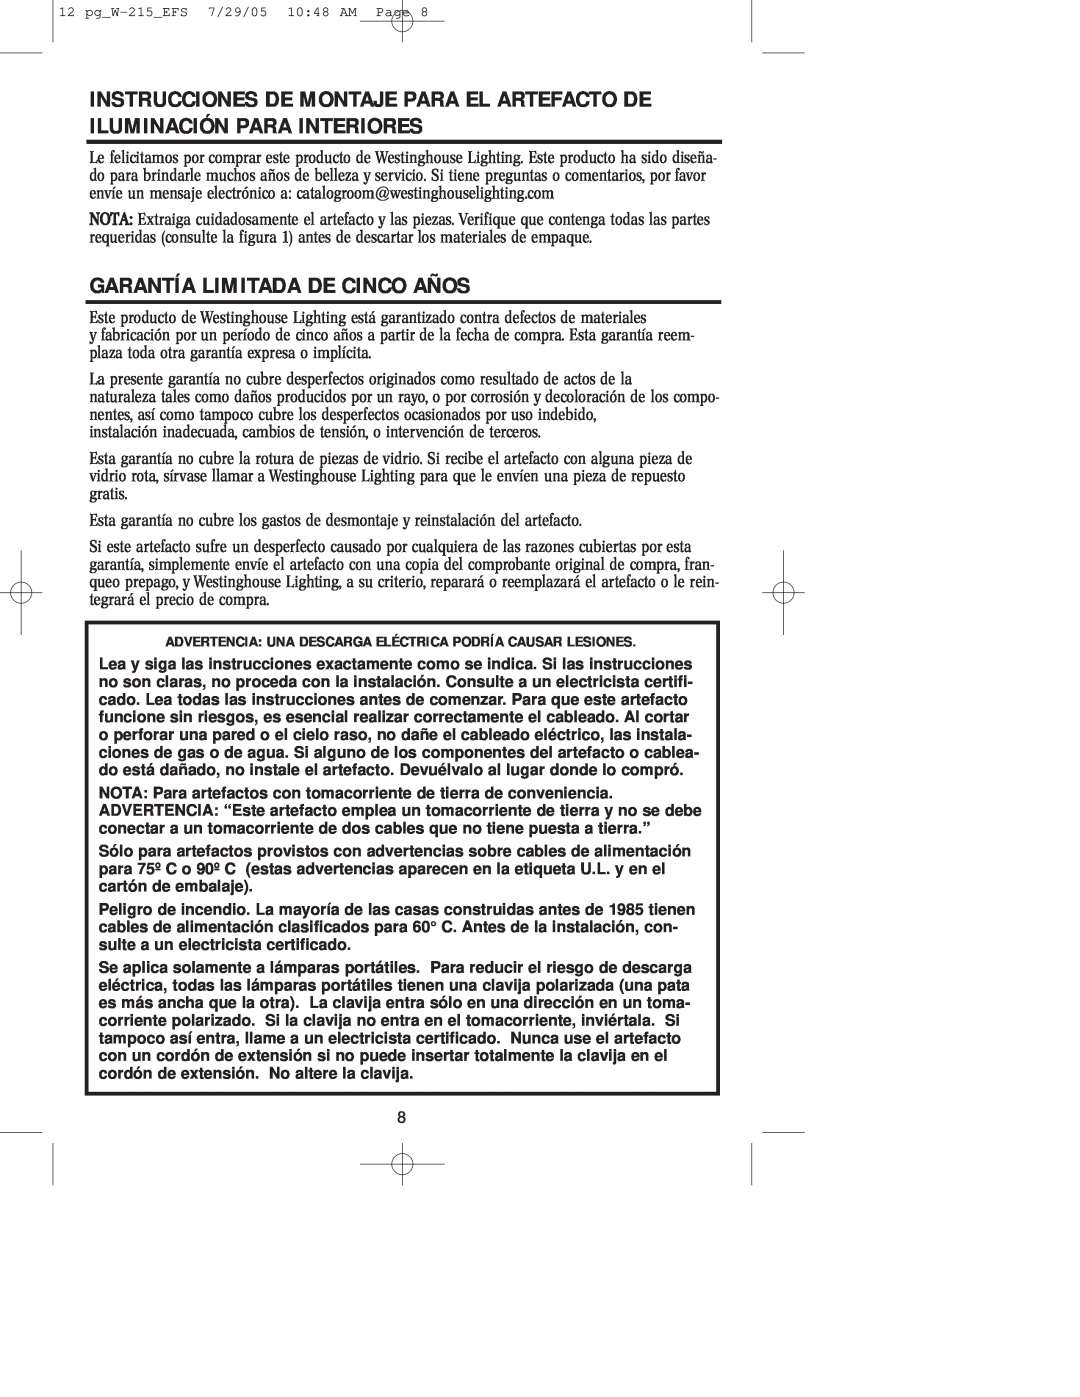 Westinghouse W-215 owner manual Garantía Limitada De Cinco Años 